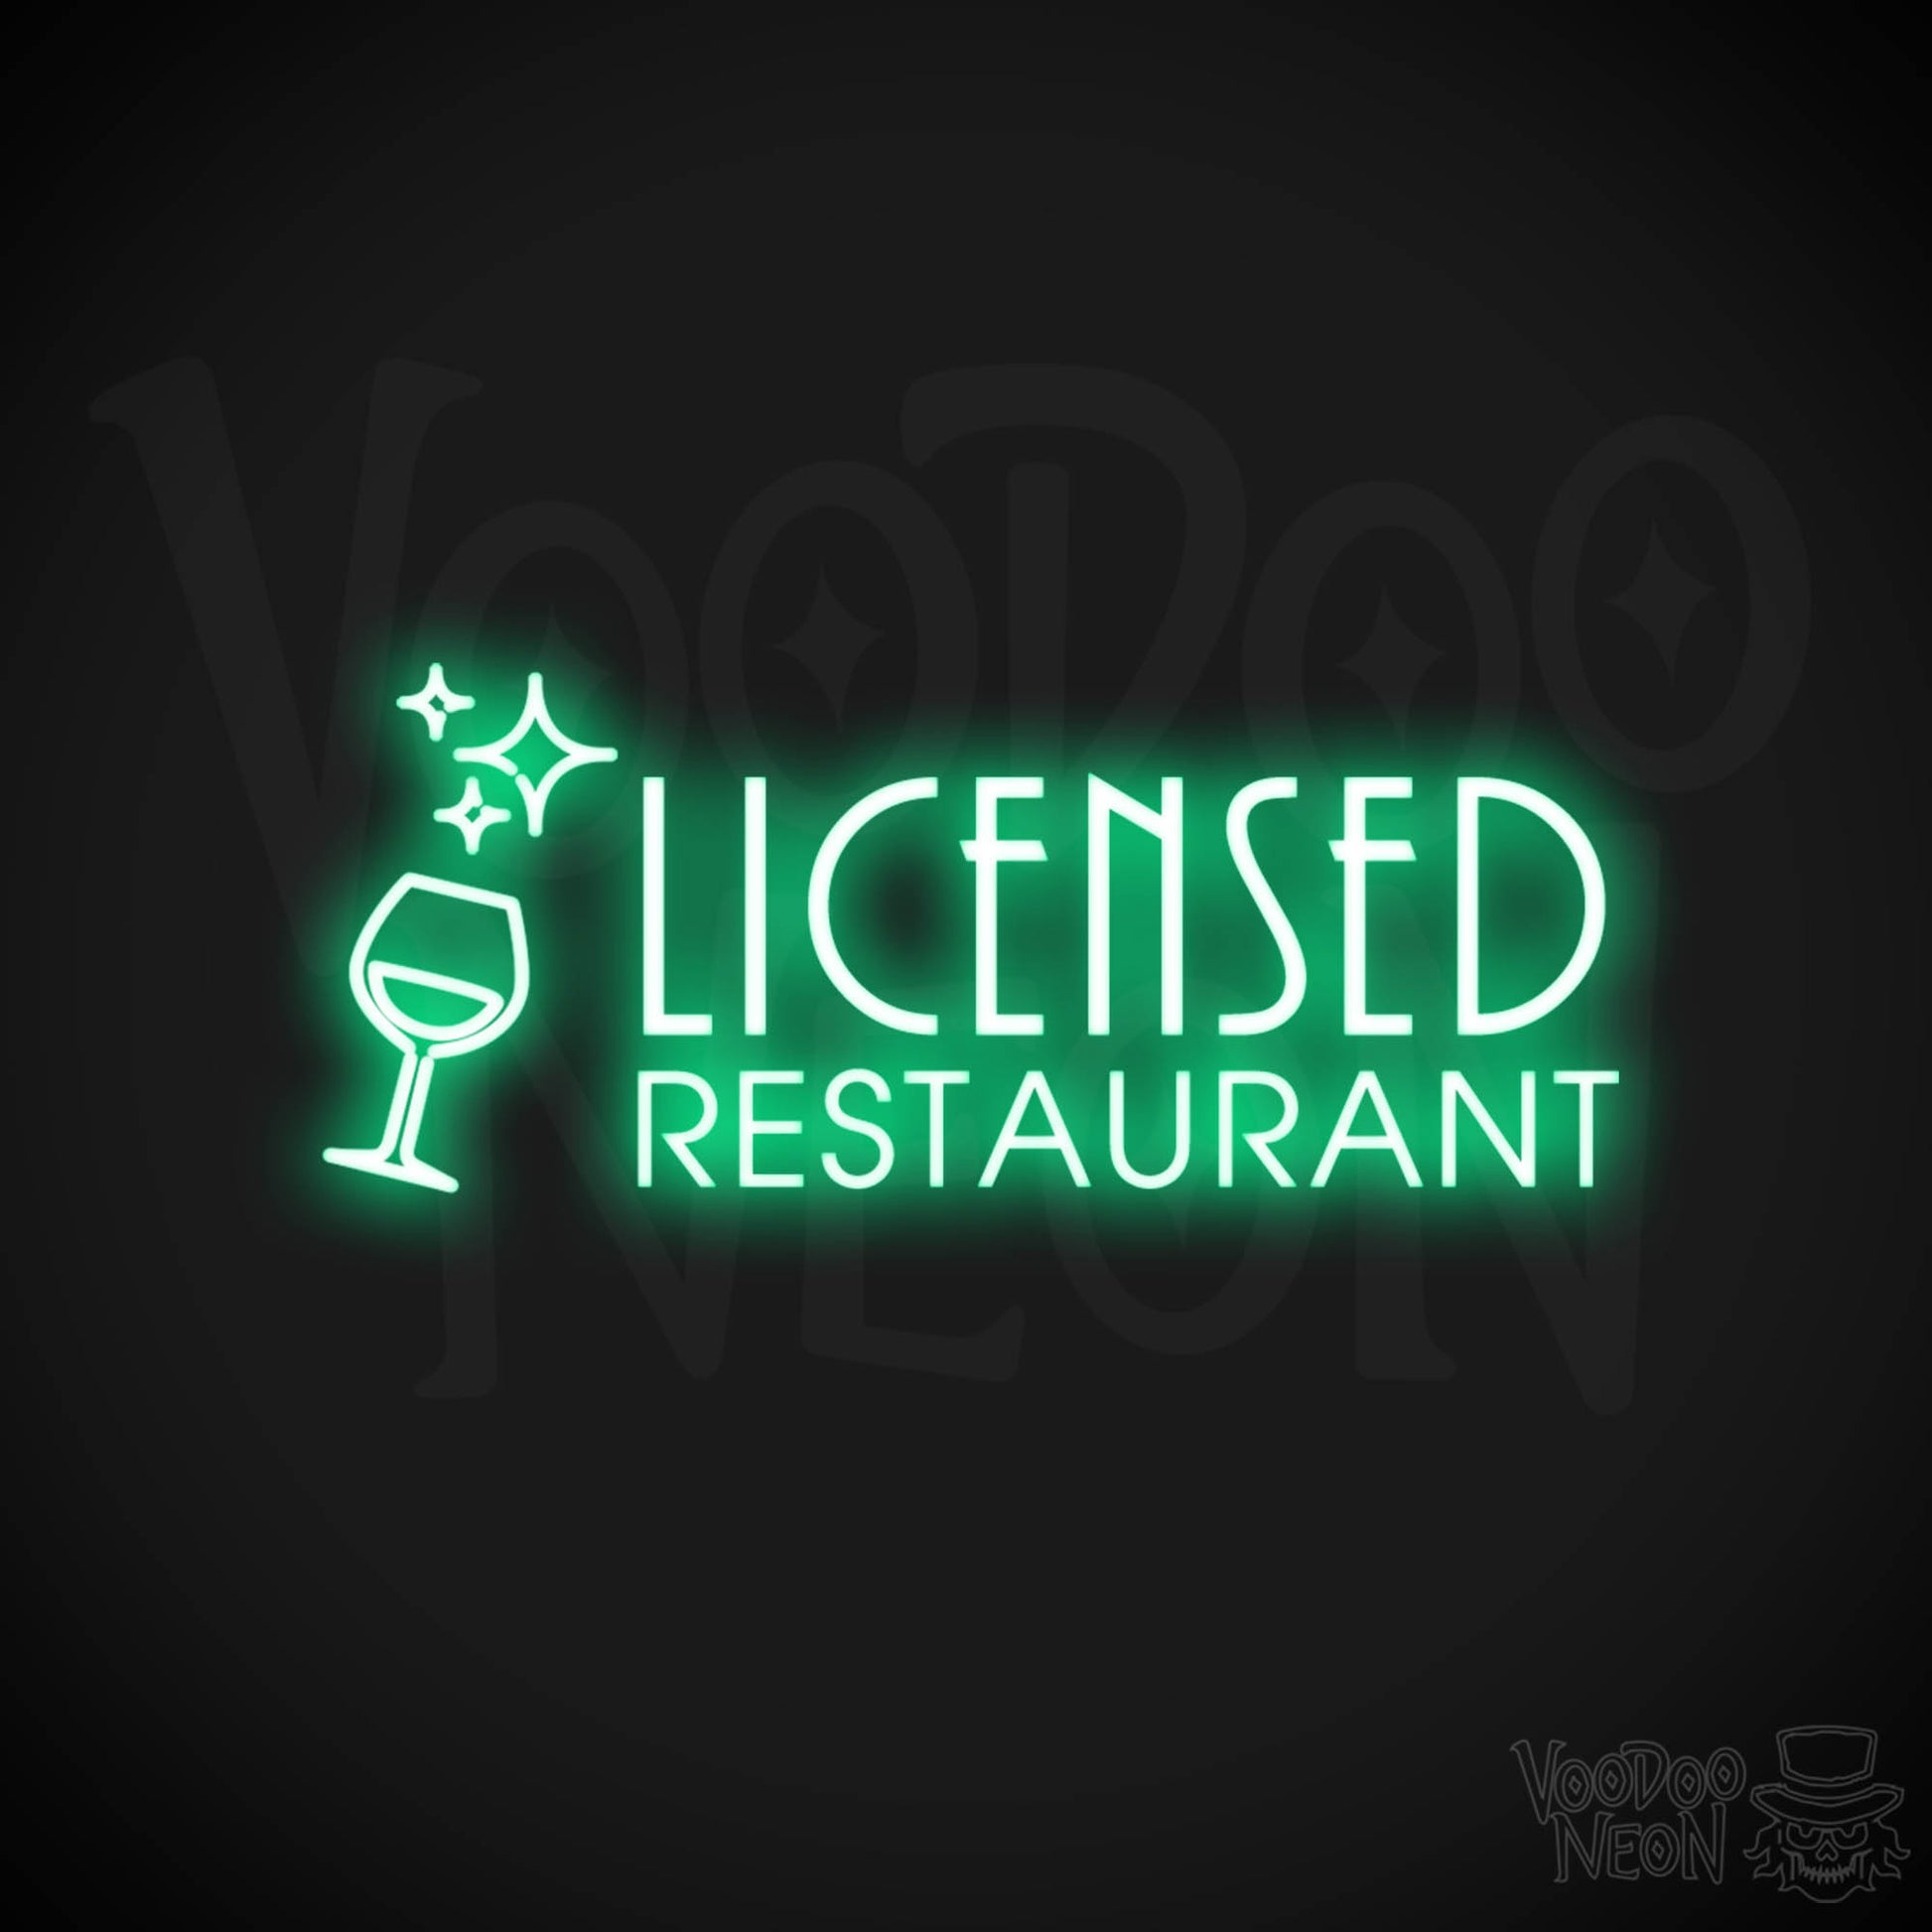 Licensed Restaurant Neon Sign - Licensed Restaurant Sign - Color Green